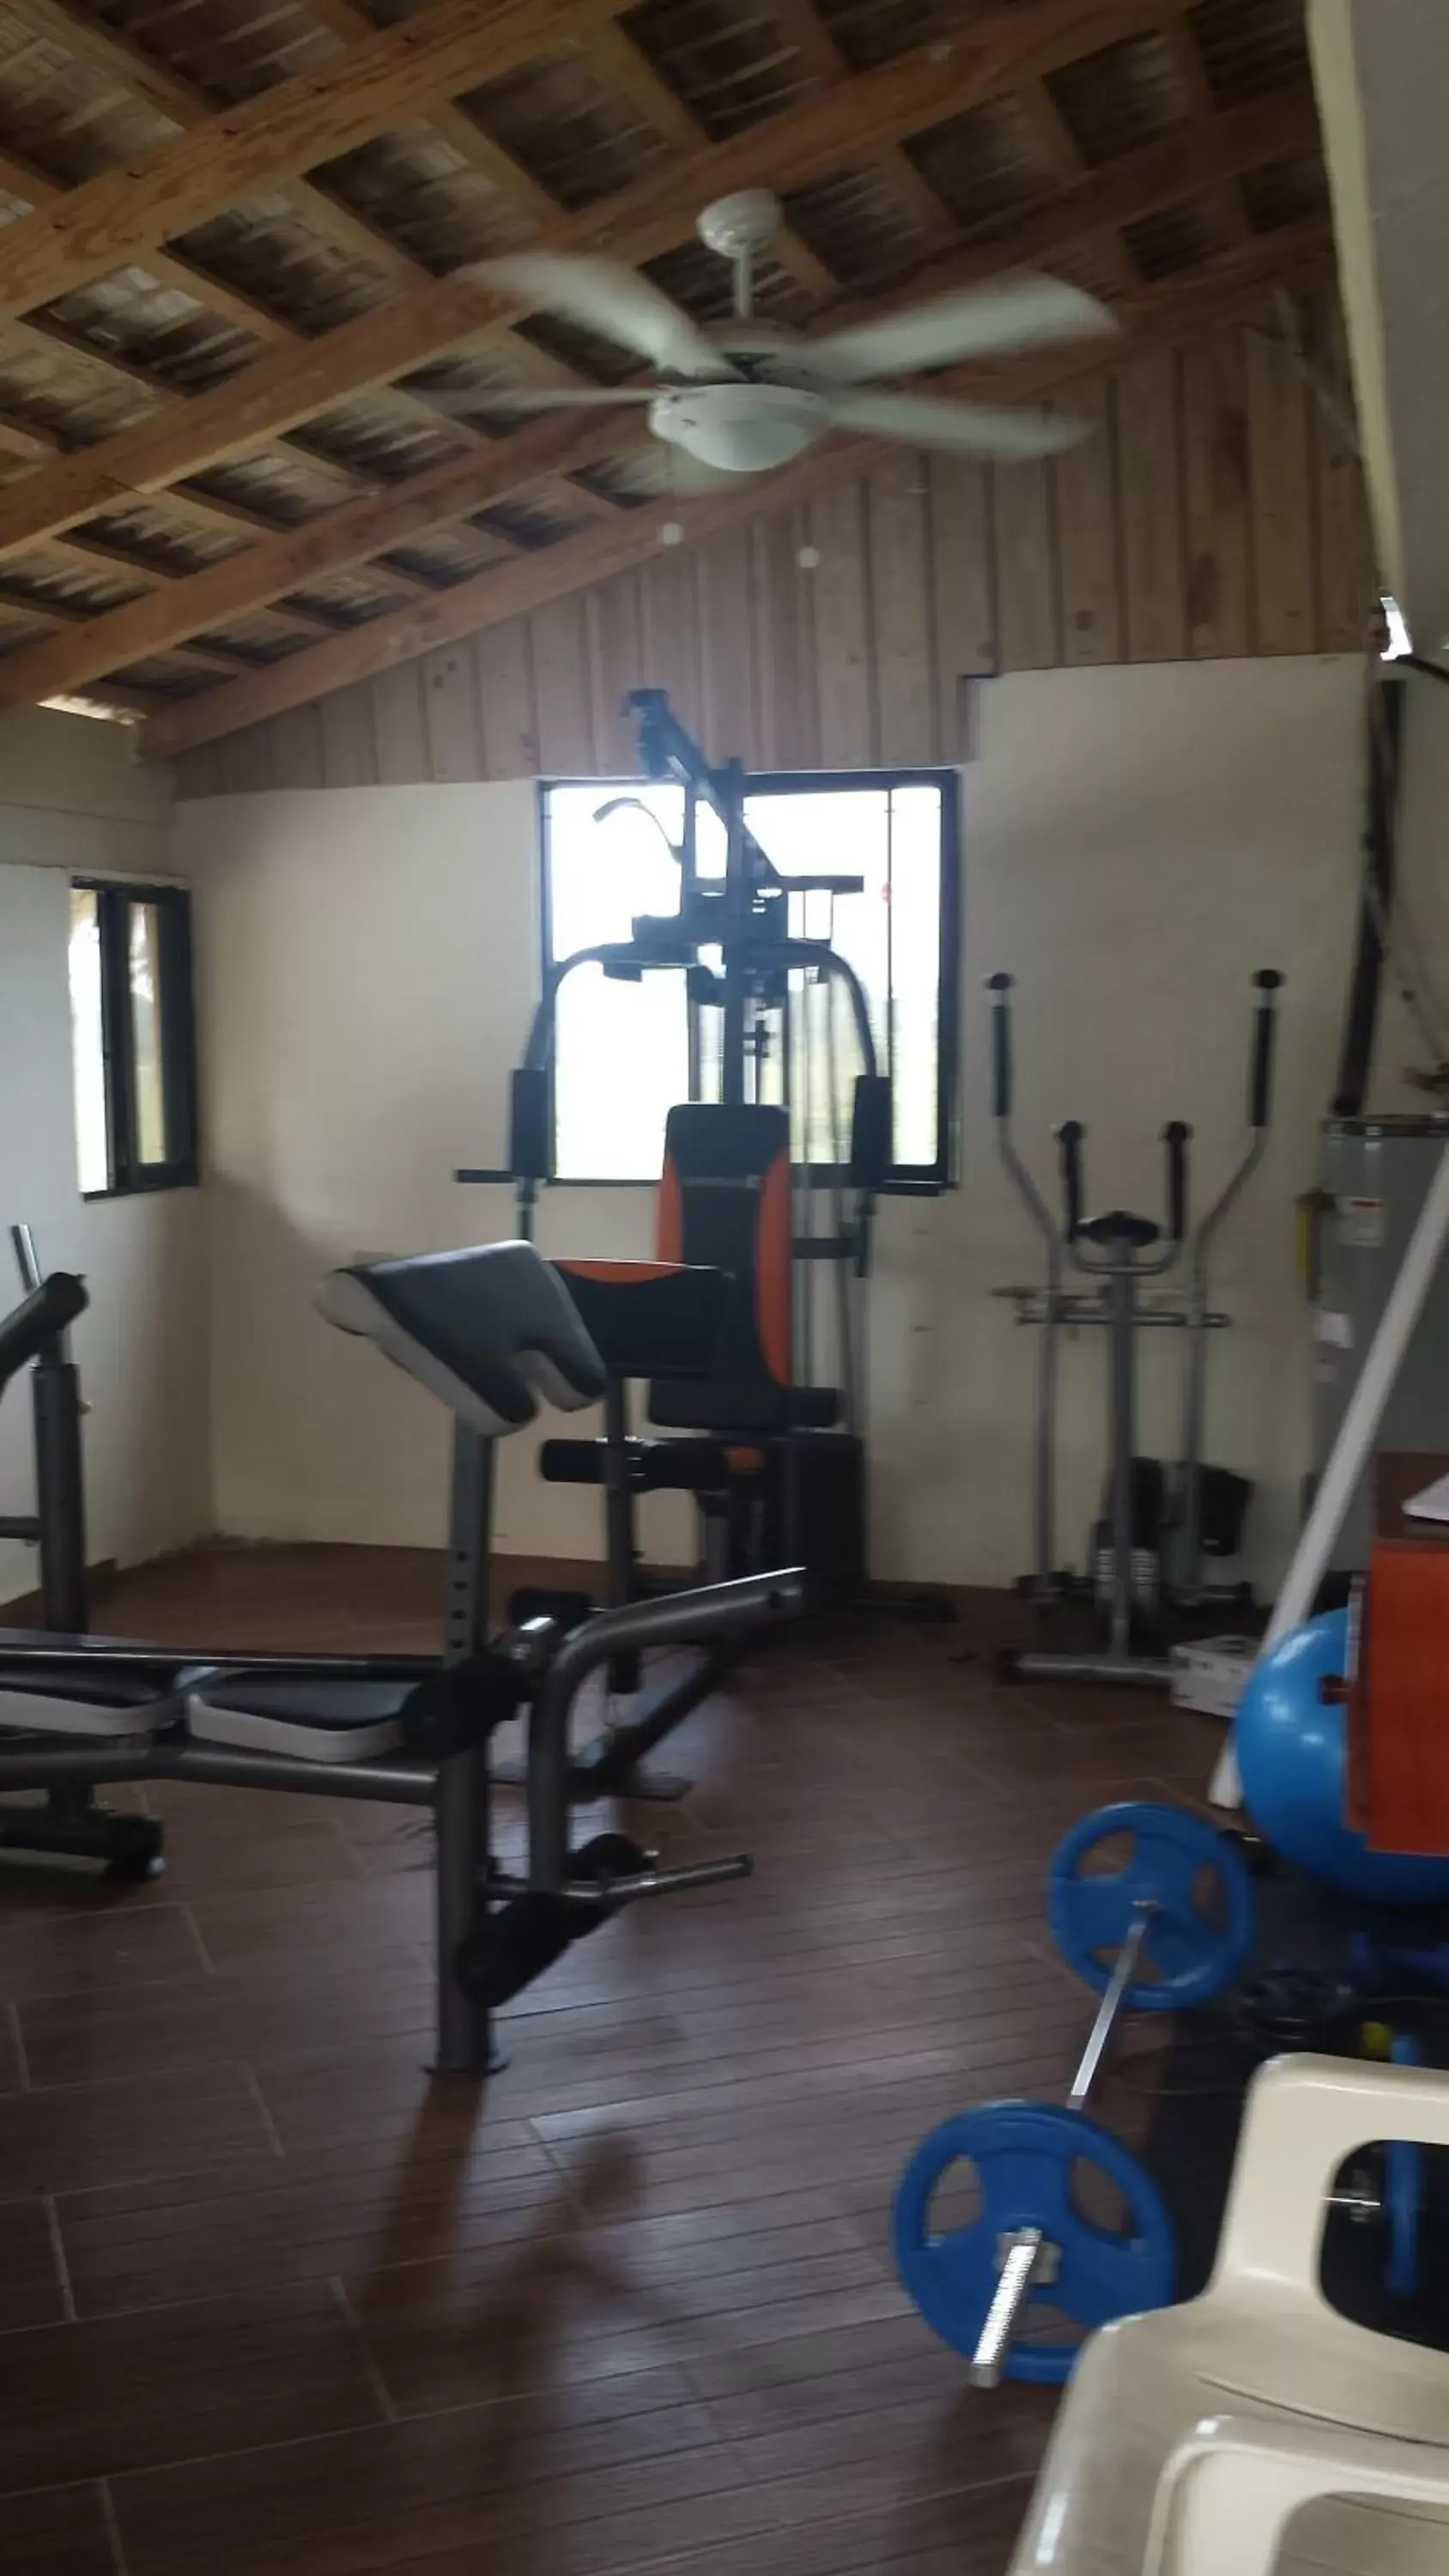 Fitness centre/facilities, Fitness Center/Facilities in El Cabarete Spa Resort all-Inclusive